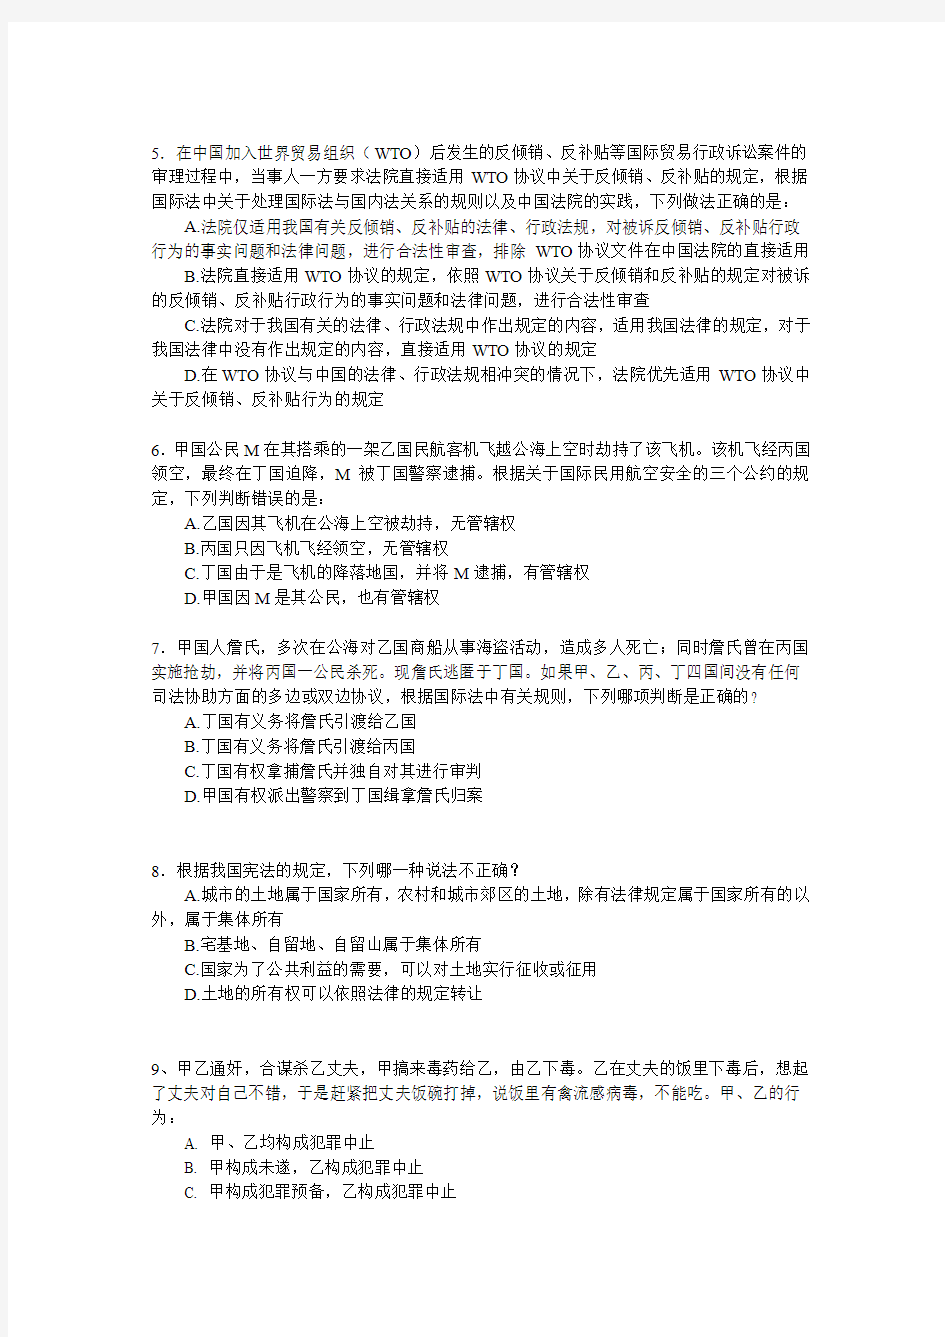 2010年湖南省考试录用法院、检察院工作人员模拟试卷(一)(审判、检察业务)